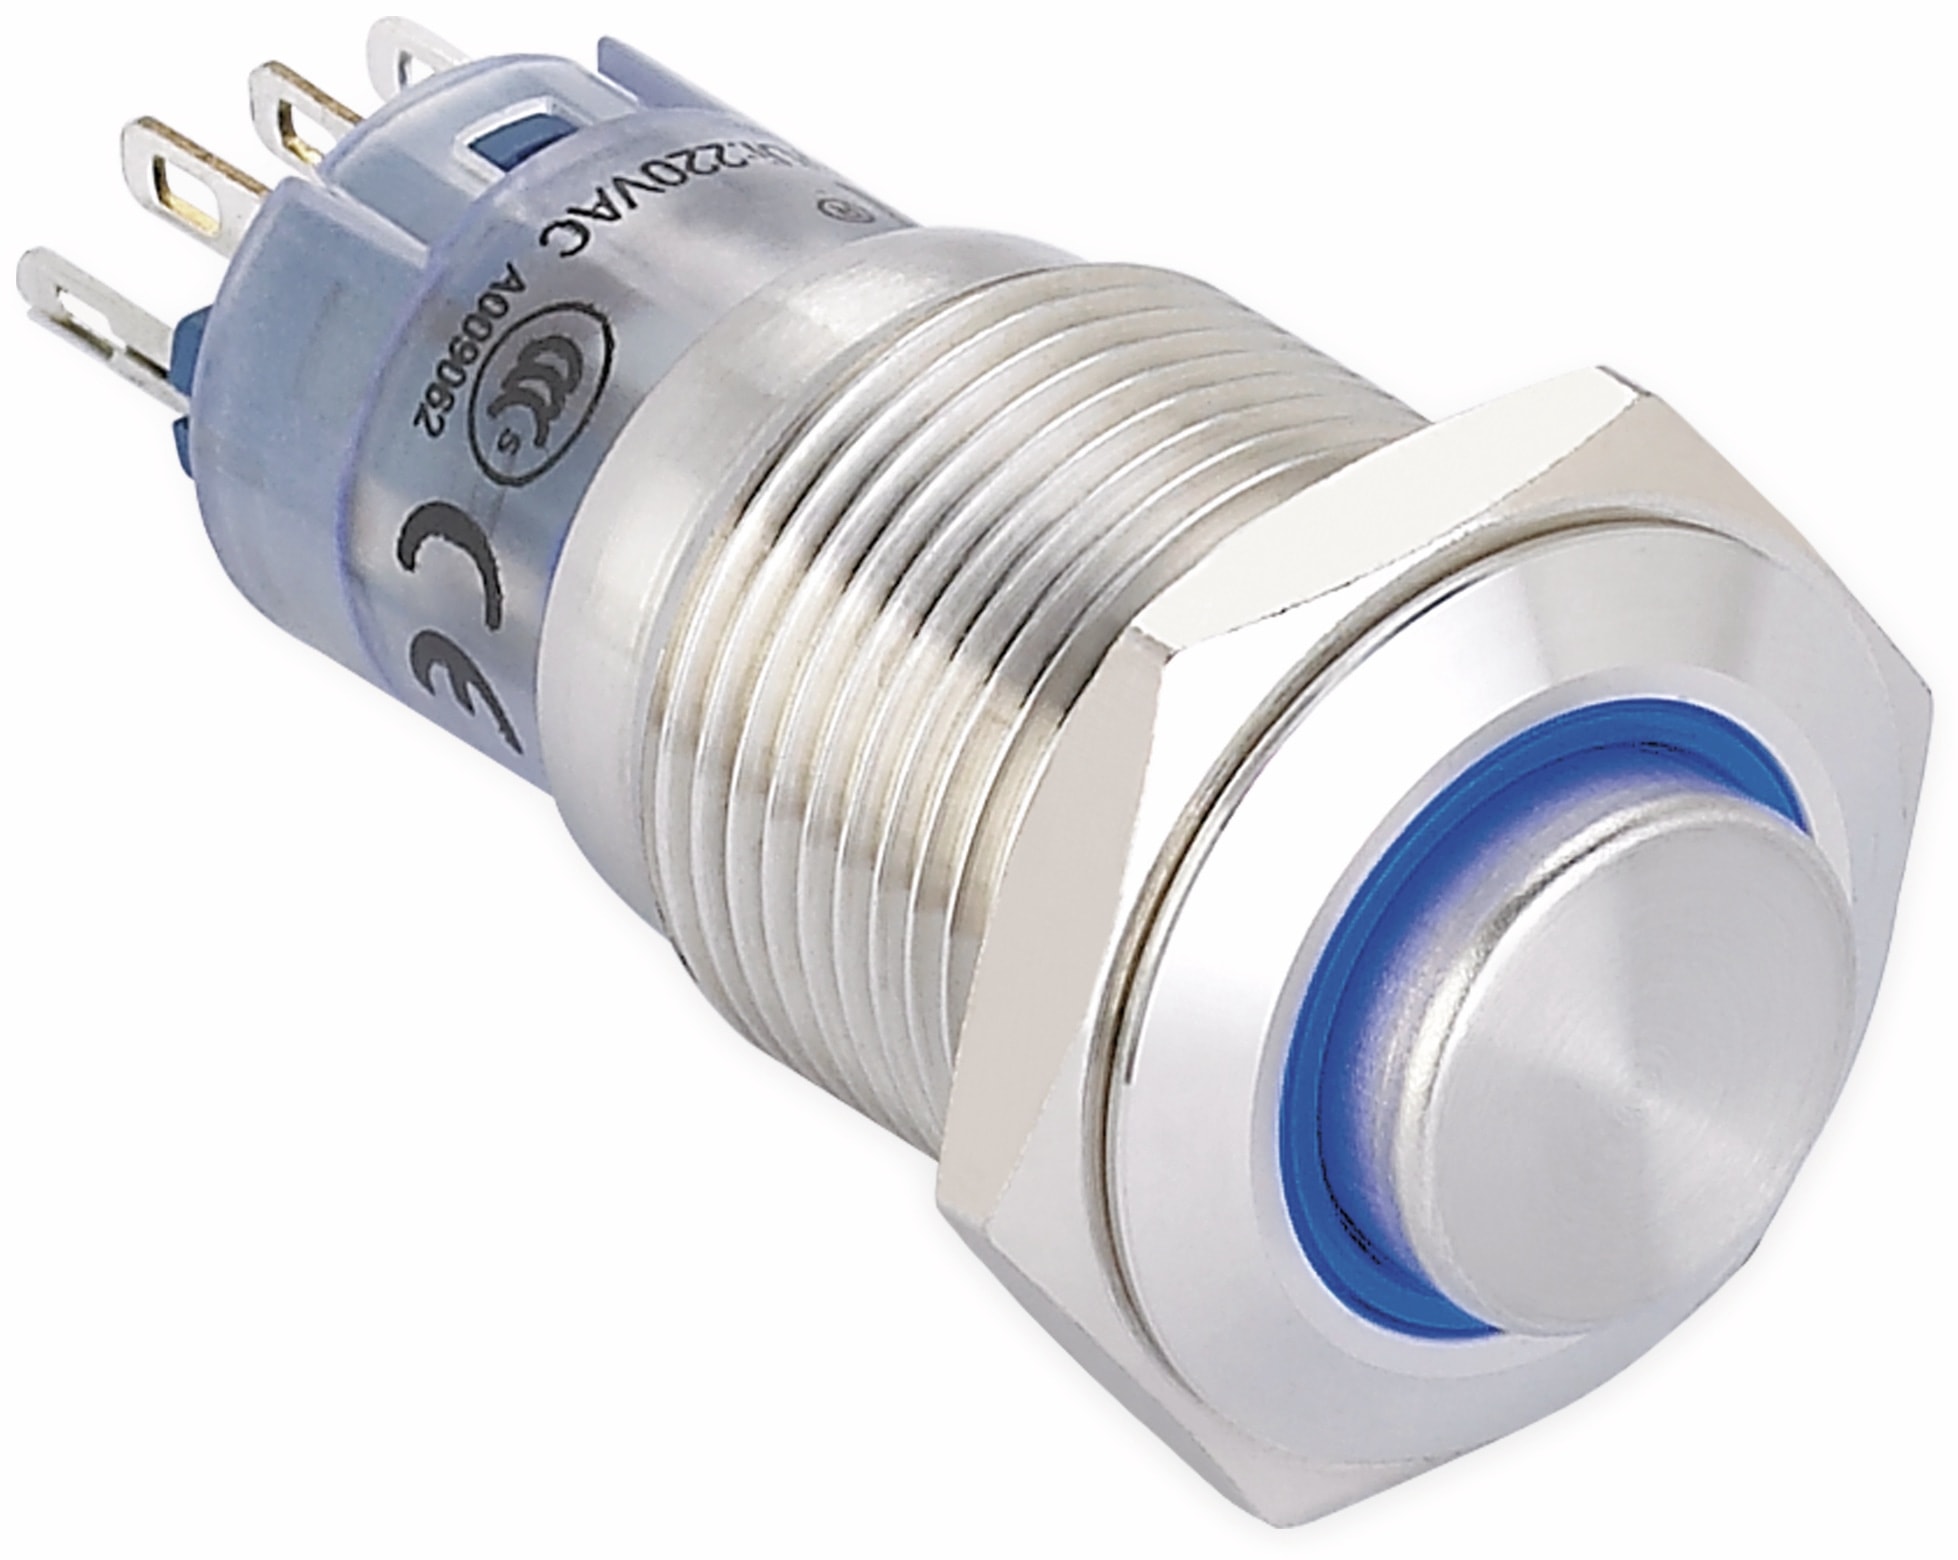 ONPOW Schalter, 24 V/DC, 1x Off/On, Beleuchtung blau, Lötanschluss, erhaben rund, Edelstahl, 16 mm